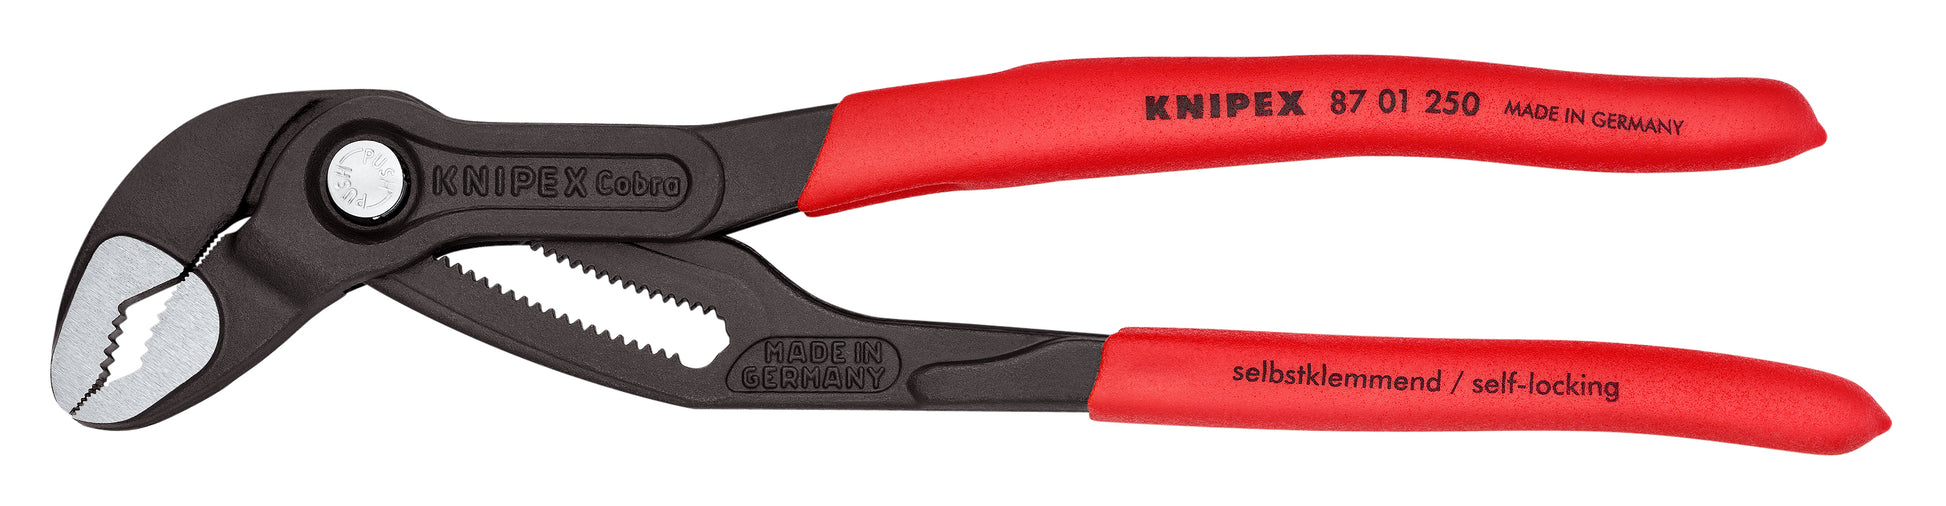 KNIPEX Automotive Pliers Starter Tool Set (5-Piece) 9K 00 80 108